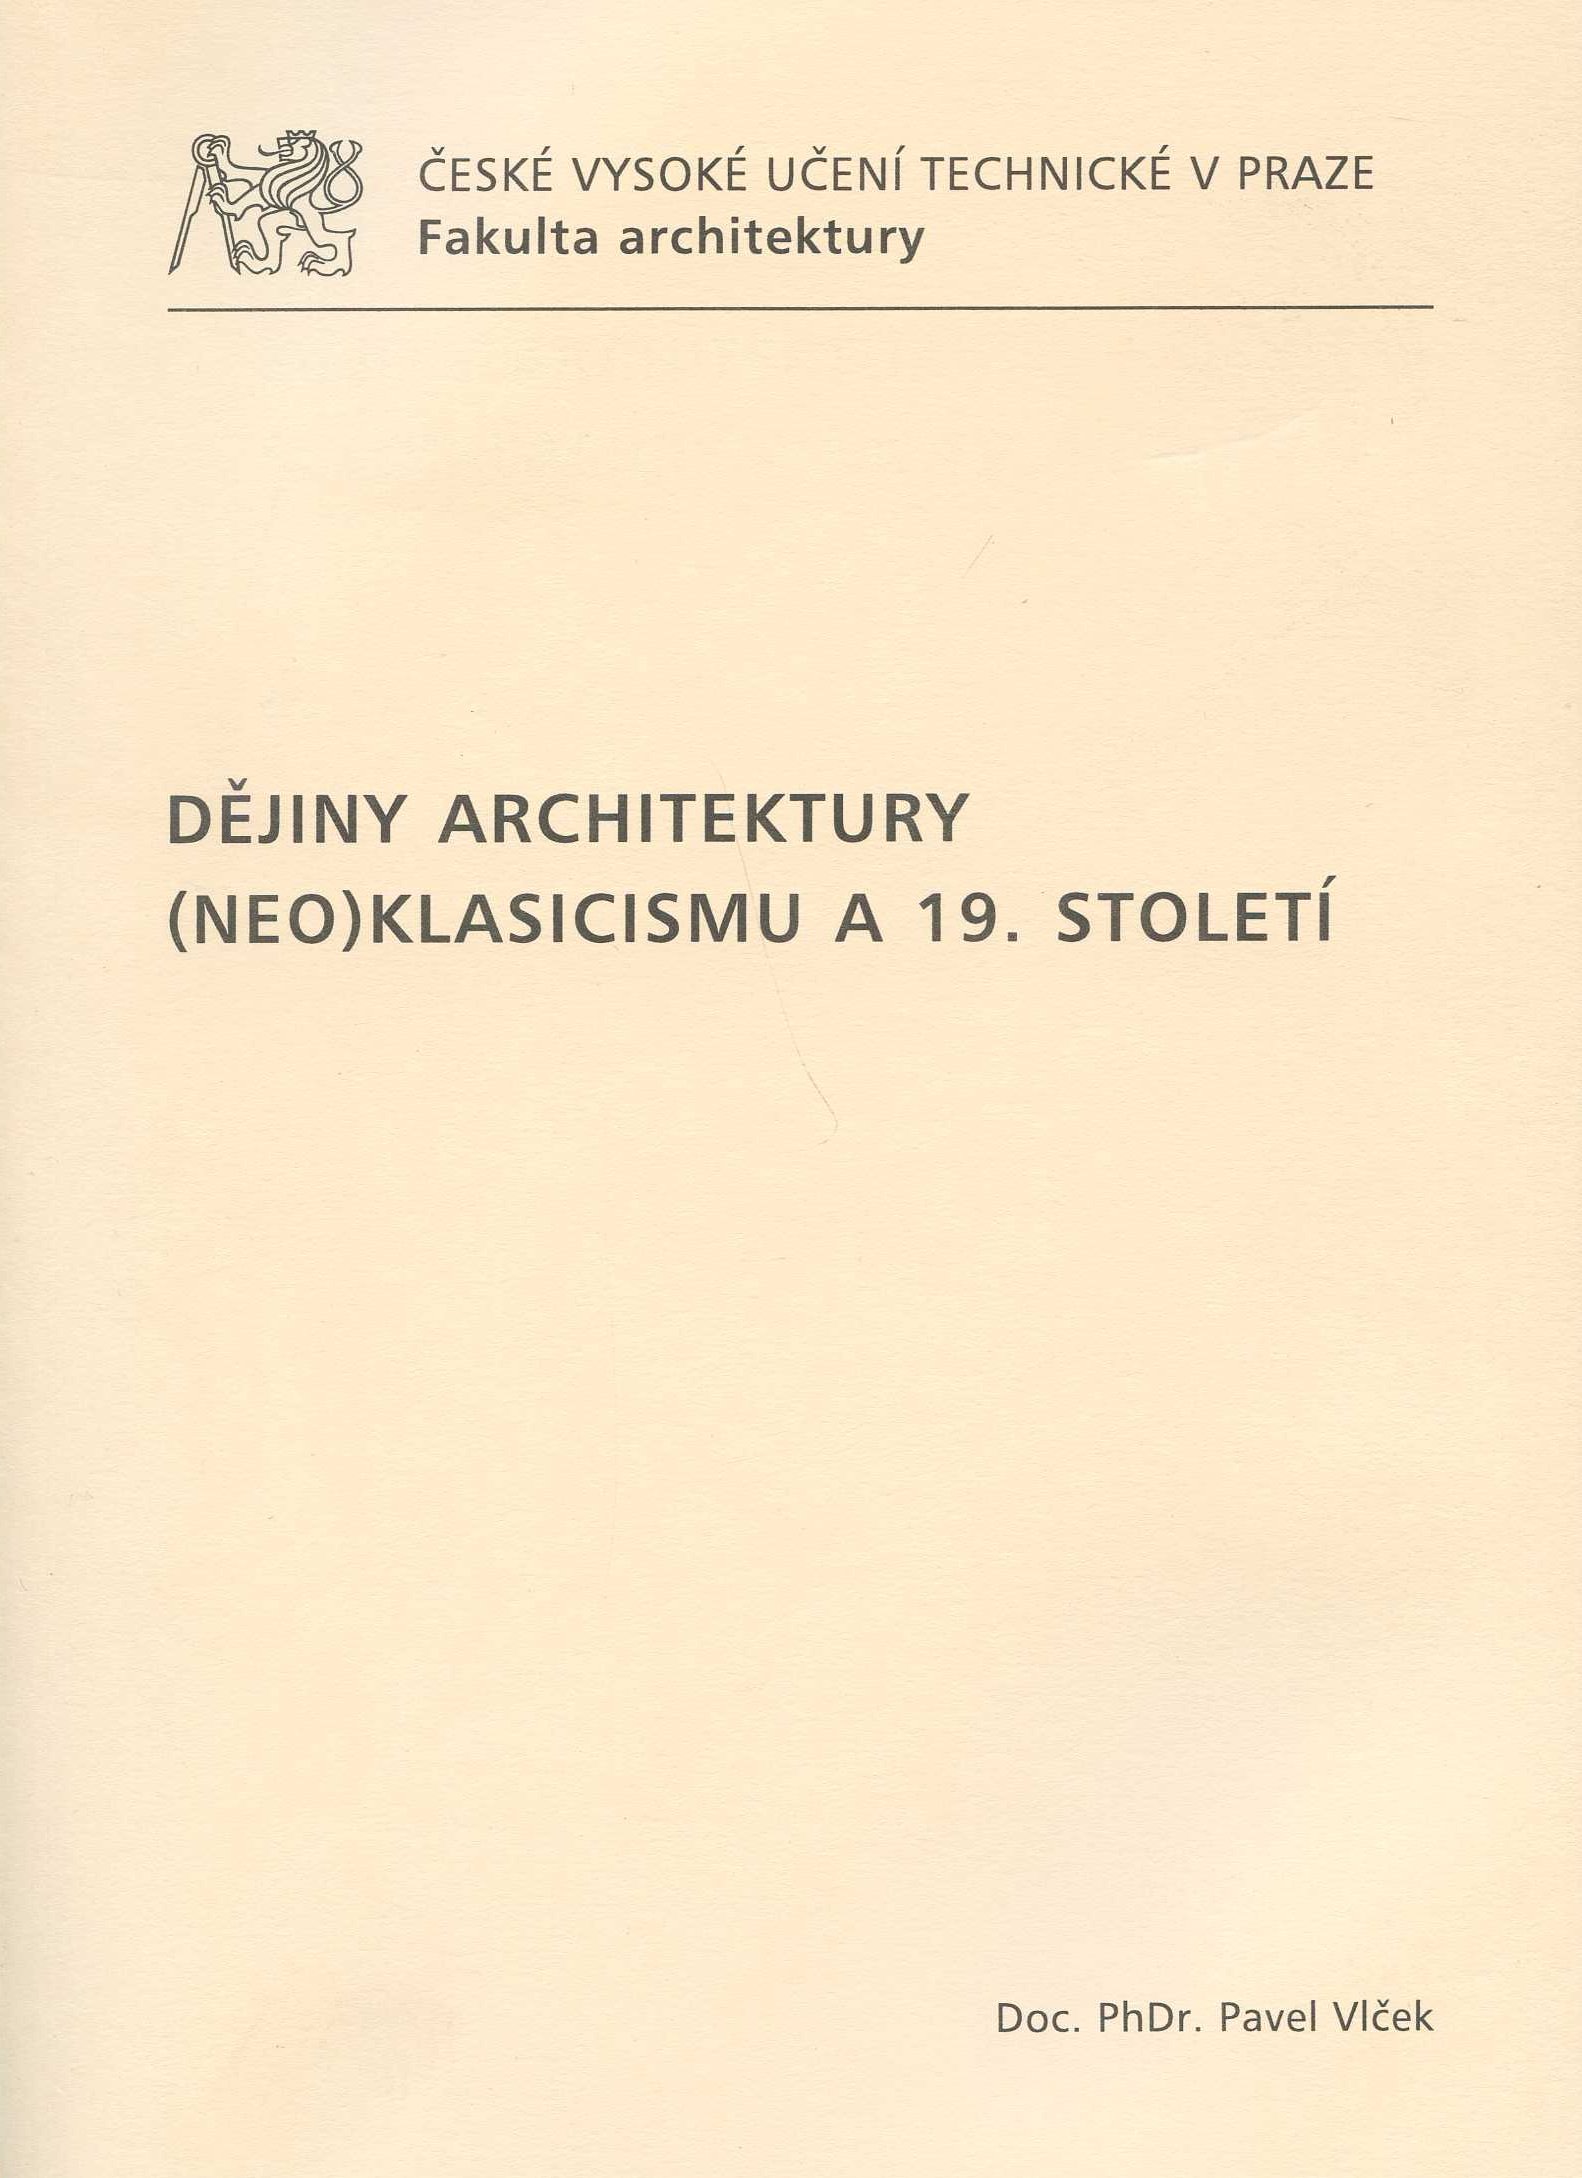 Dějiny architektury (neo)klasicizmu a 19. století